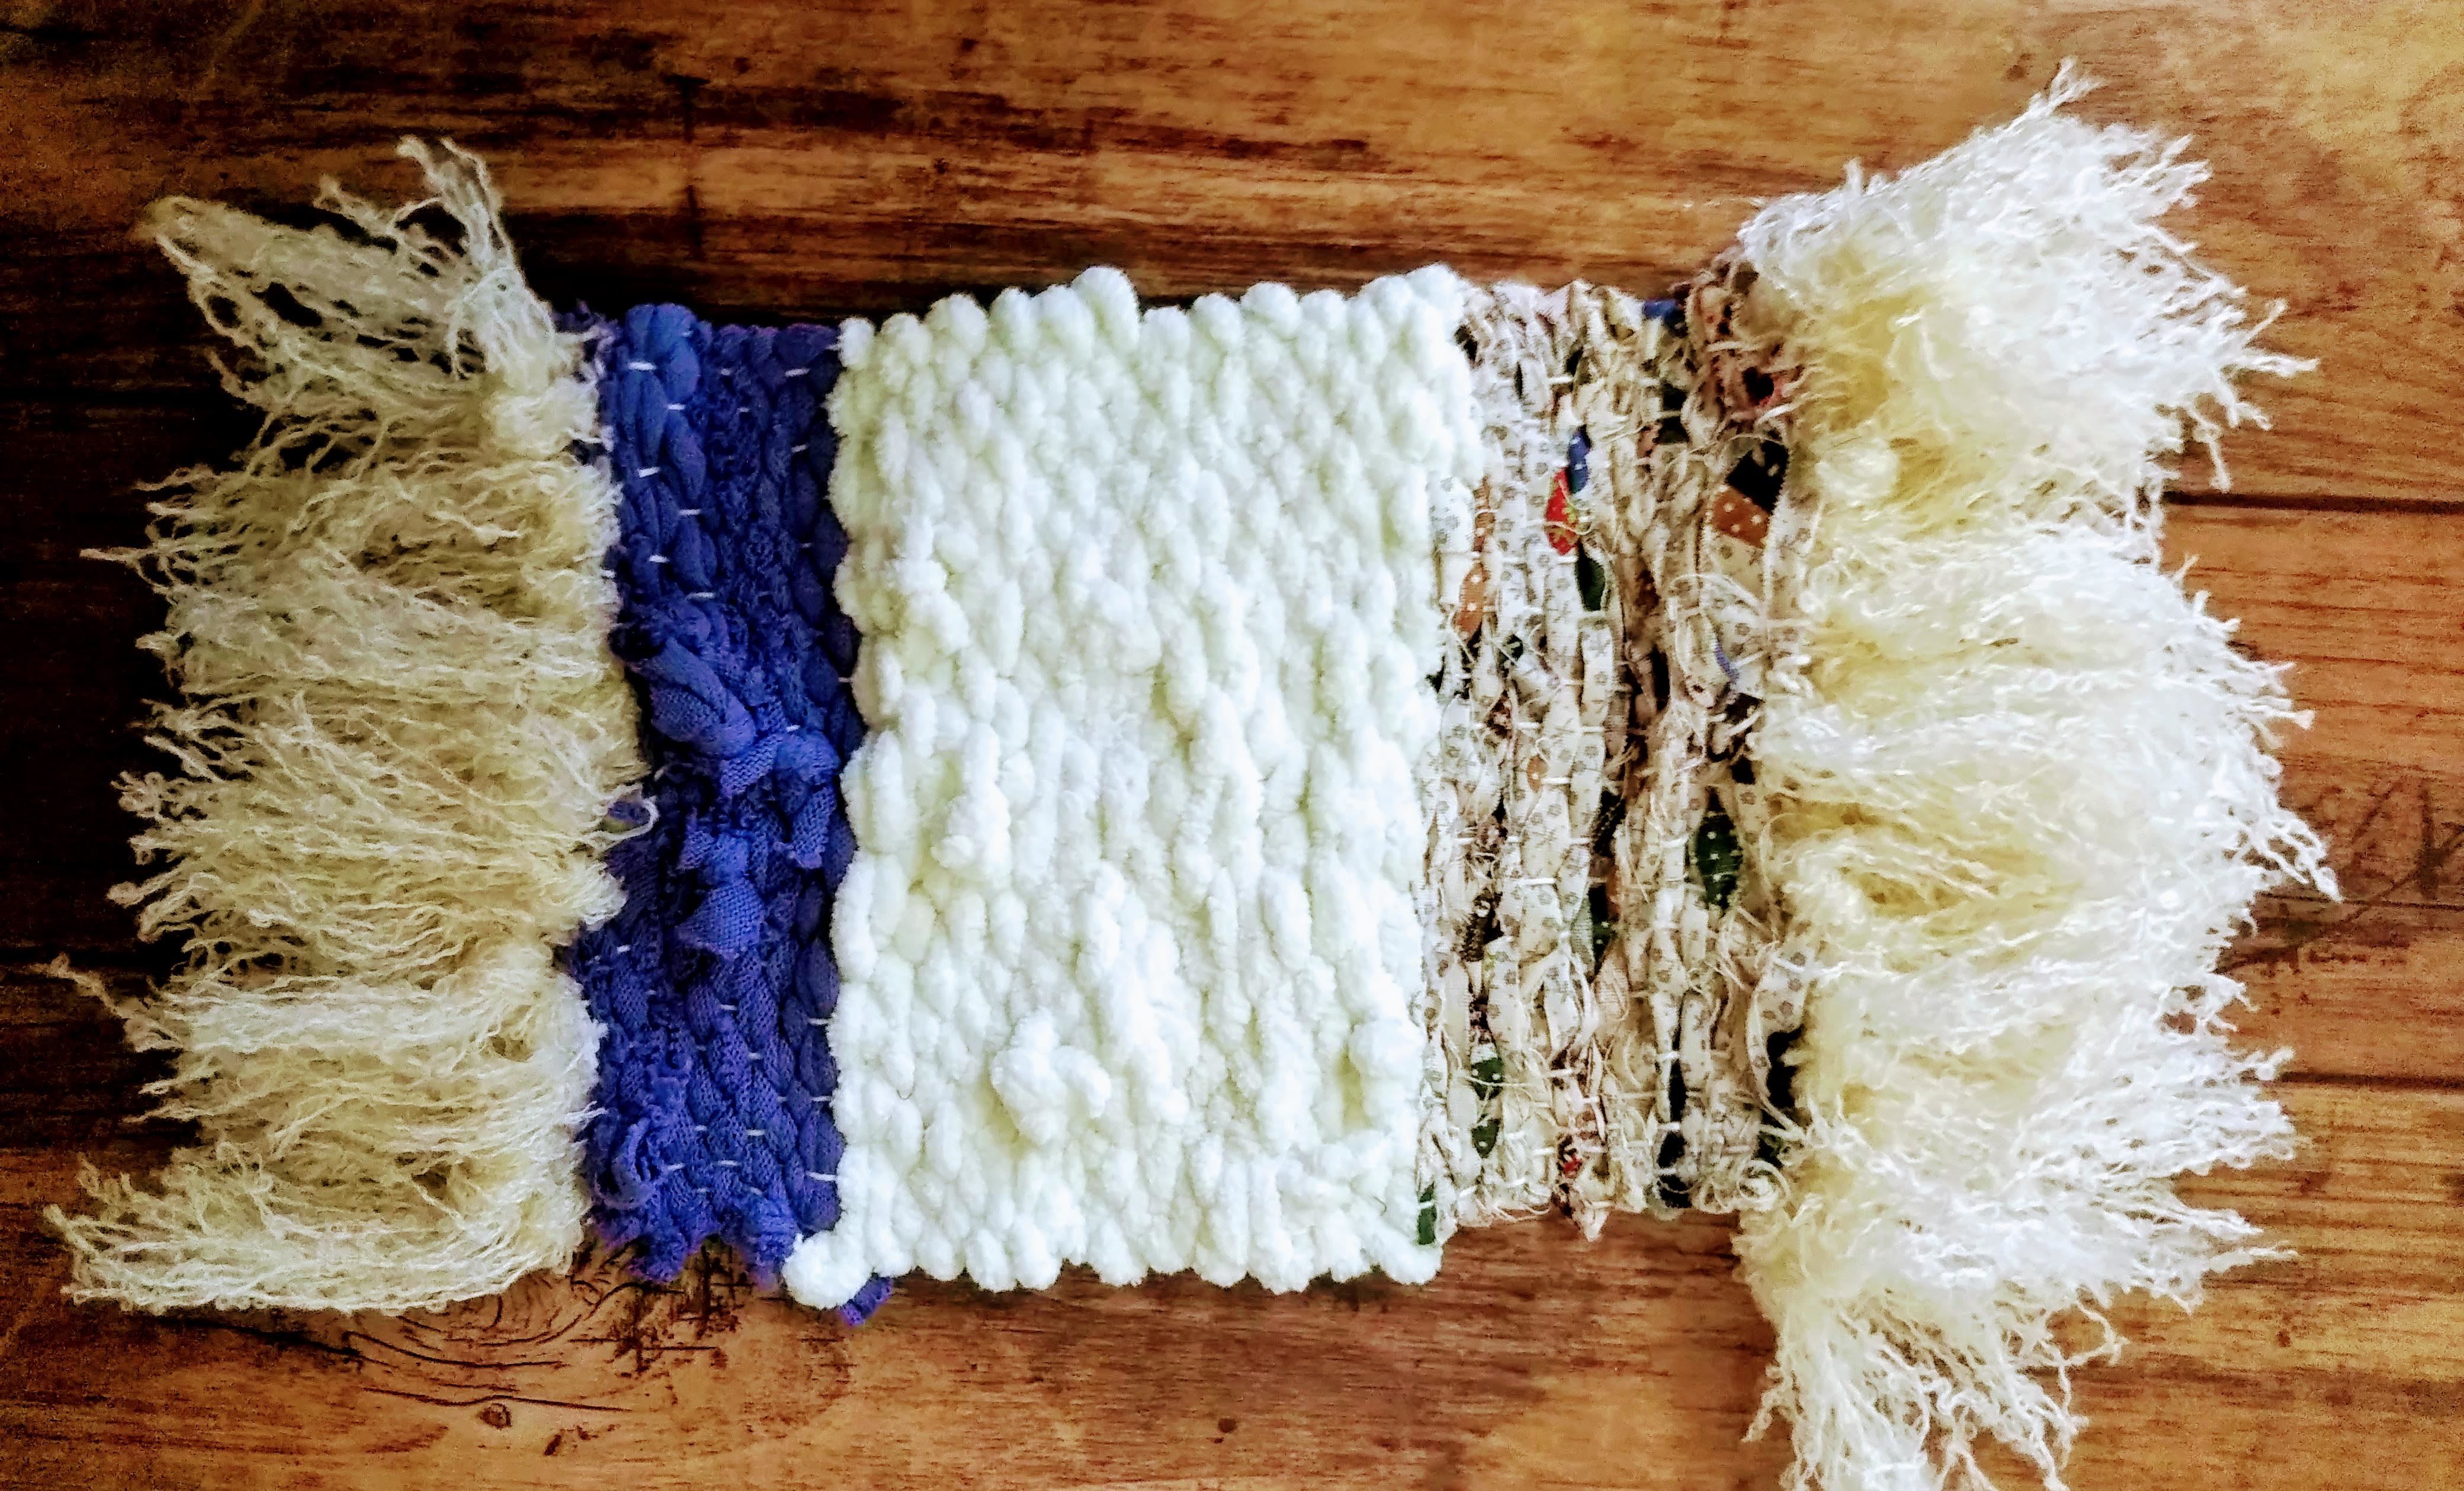 裂き織りの楽しみ方とは バッグなどの作品の作り方と都内の体験場所をご紹介 暮らし の